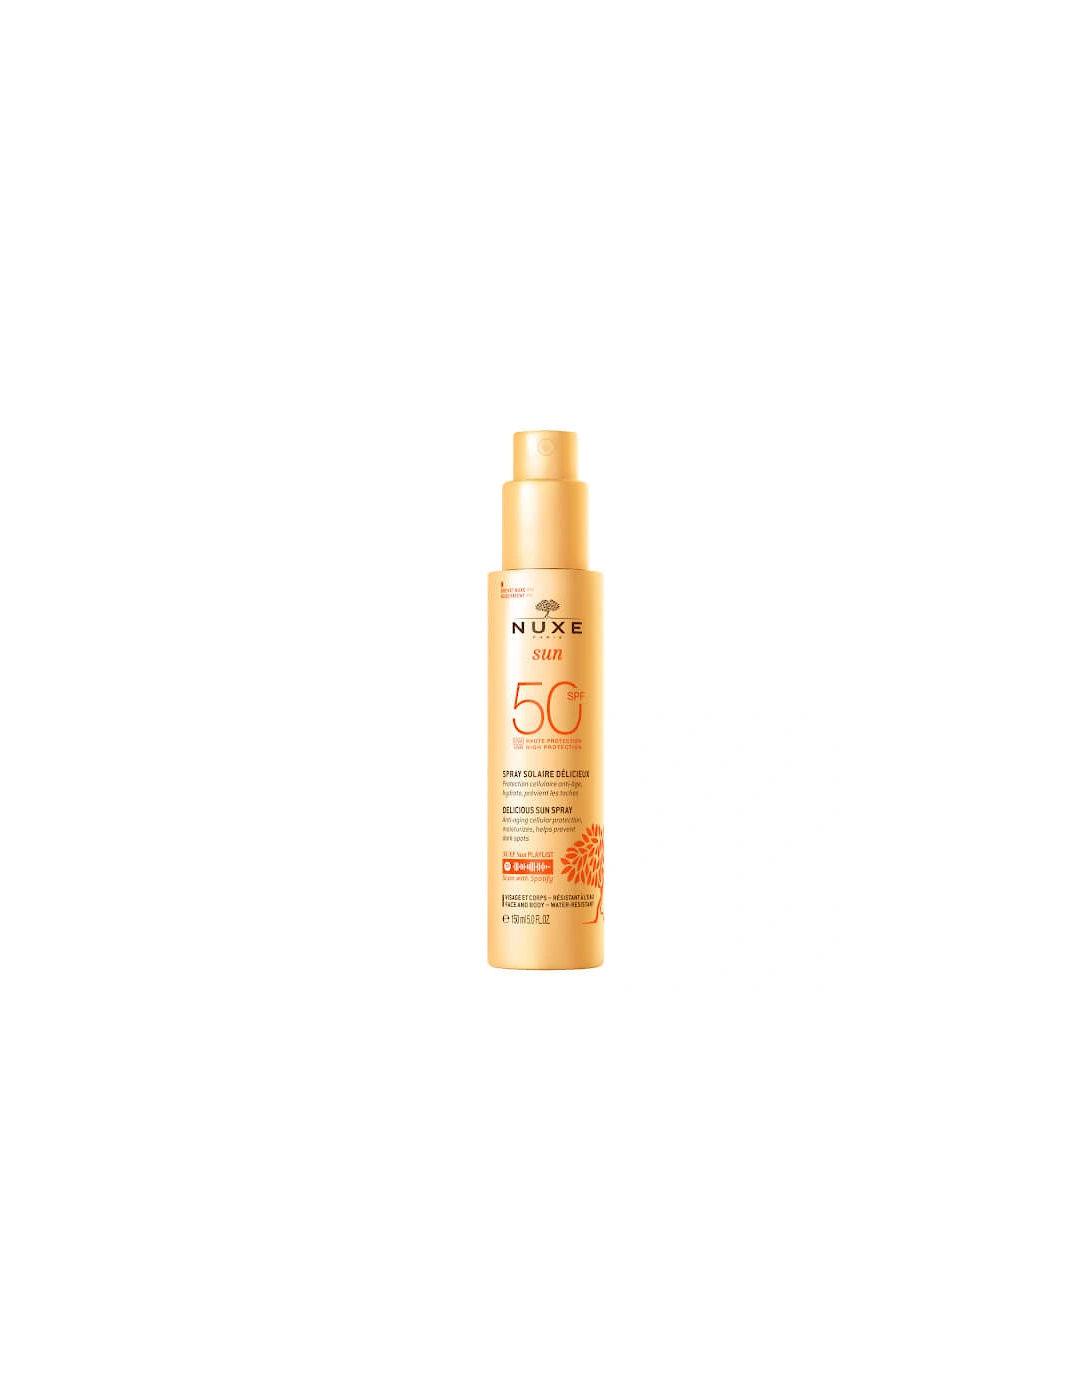 Face and Body Delicious Sun Spray SPF 50 150ml - NUXE, 2 of 1